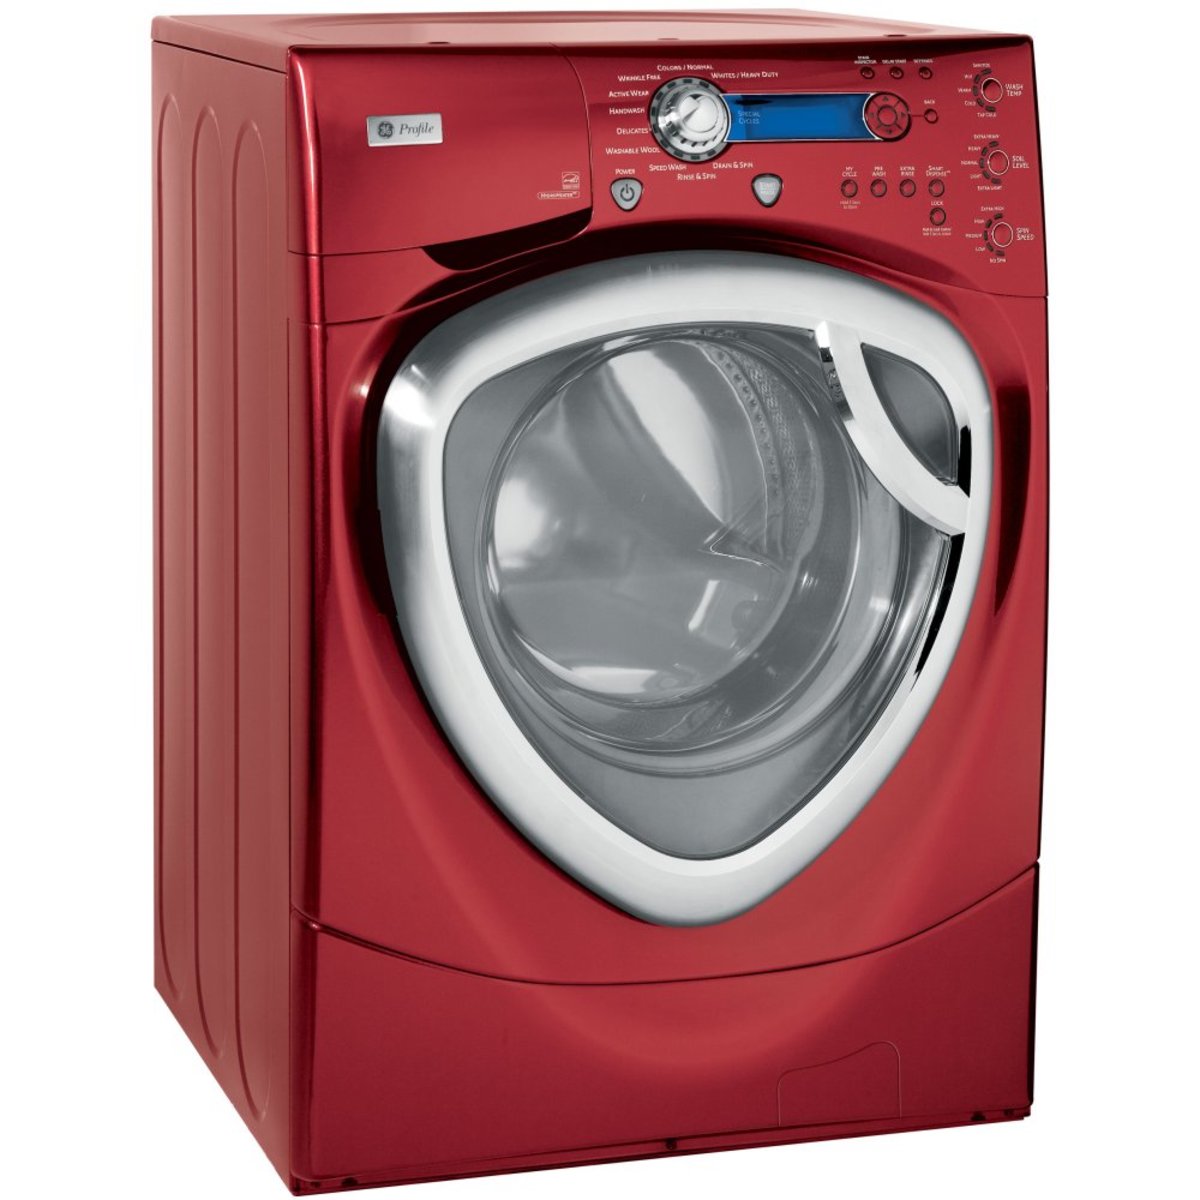 Какую стиральную машинку можно купить. LG стиральная машинка красная dlgx3071r. Стиральная машинка yirego. Сушильная машина General Electric. Стиральная машинка Либхер.